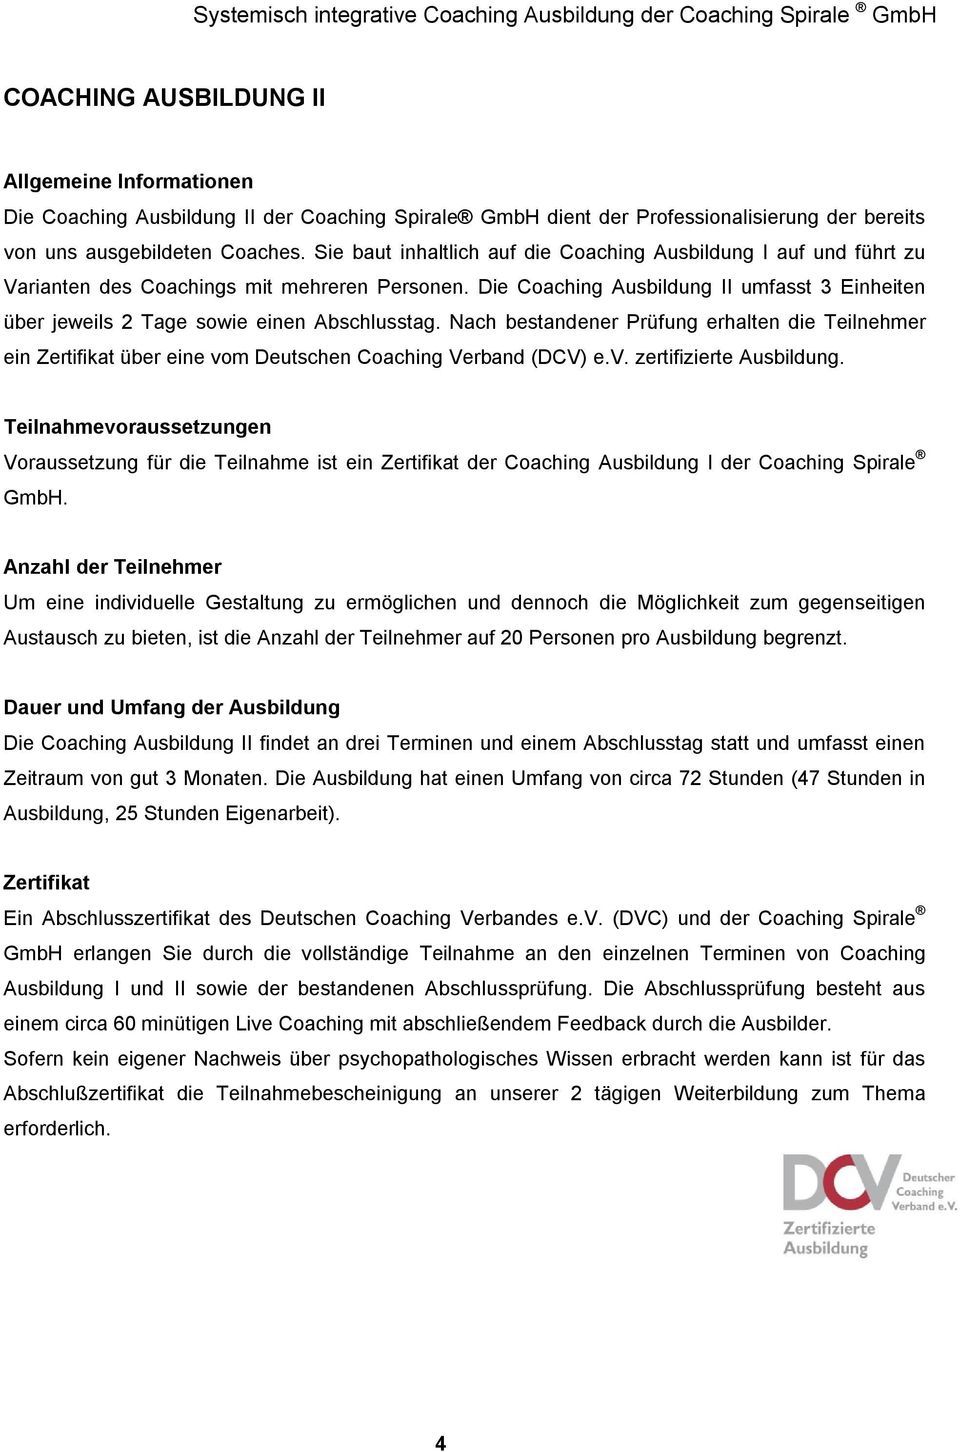 Nach bestandener Prüfung erhalten die Teilnehmer ein Zertifikat über eine vom Deutschen Verband (DCV) e.v. zertifizierte Ausbildung.